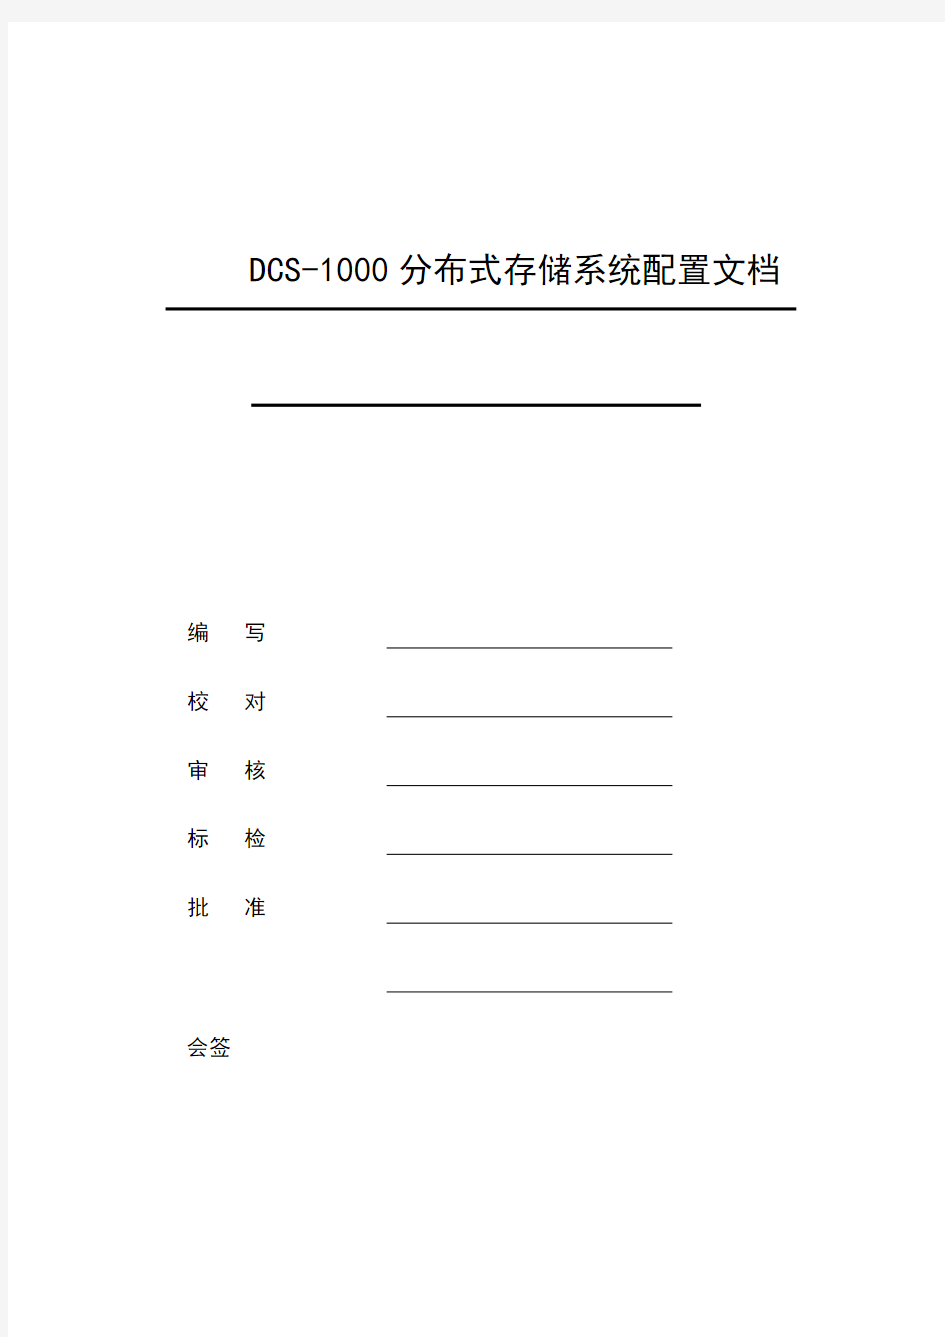 DCS-1000分布式存储系统配置手册